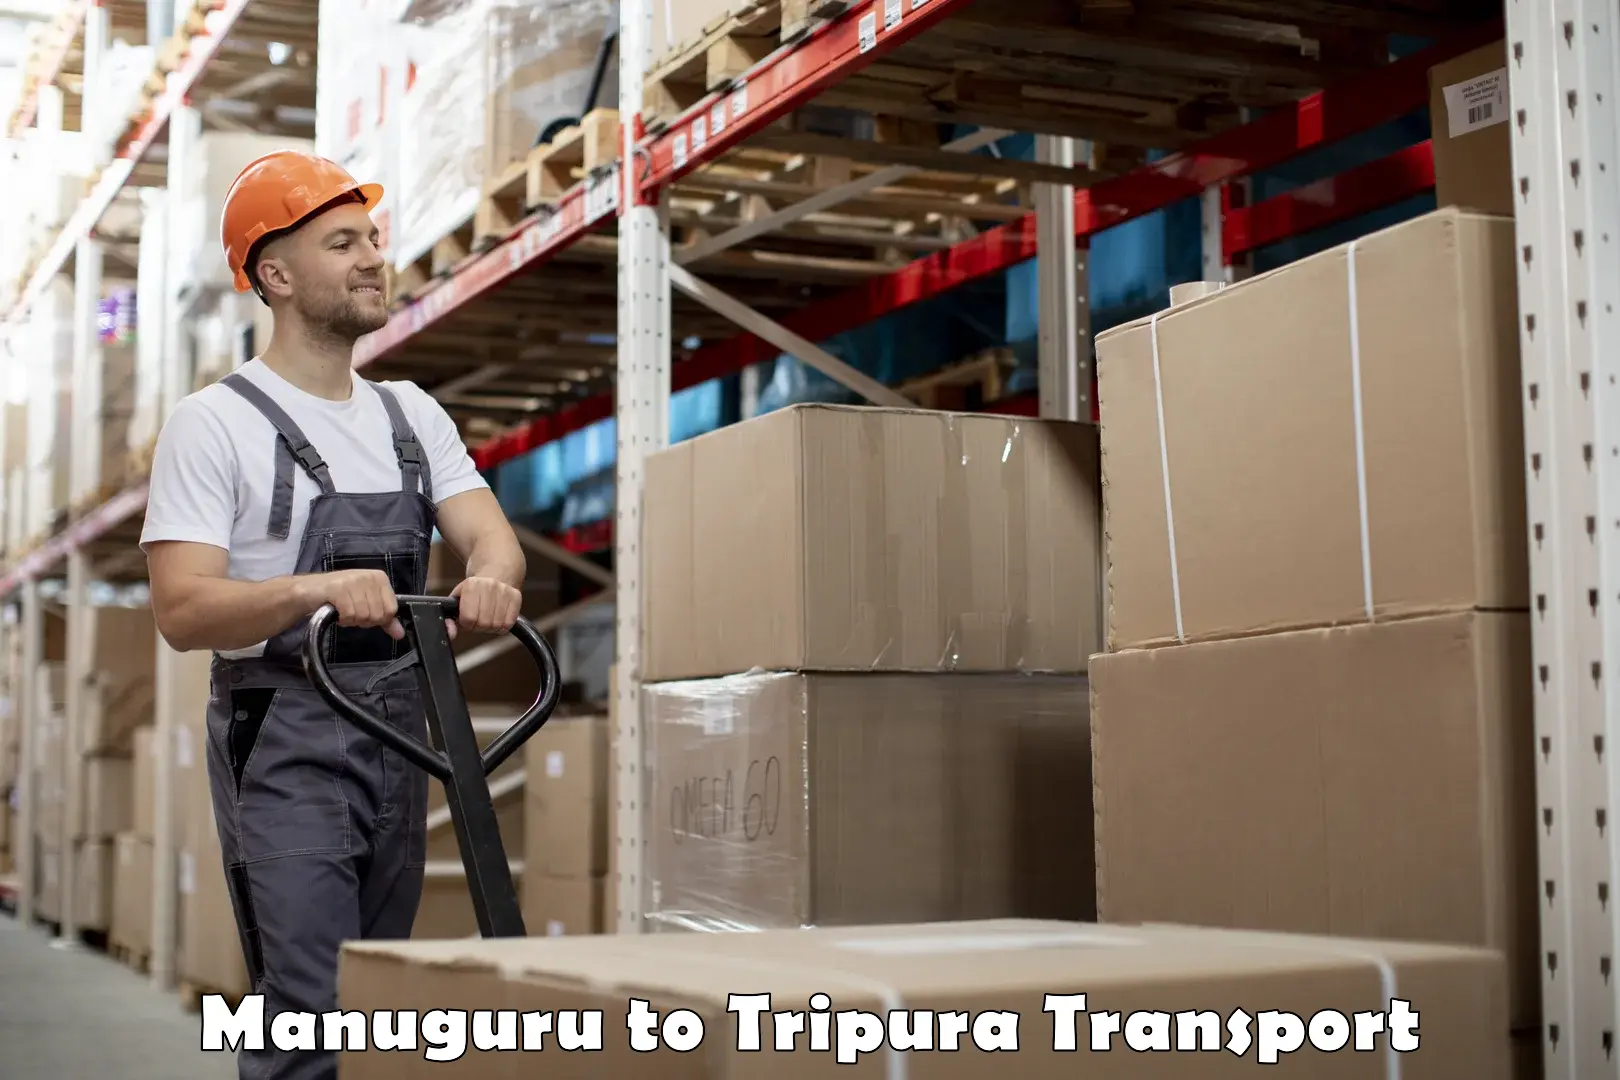 Nearby transport service Manuguru to Tripura